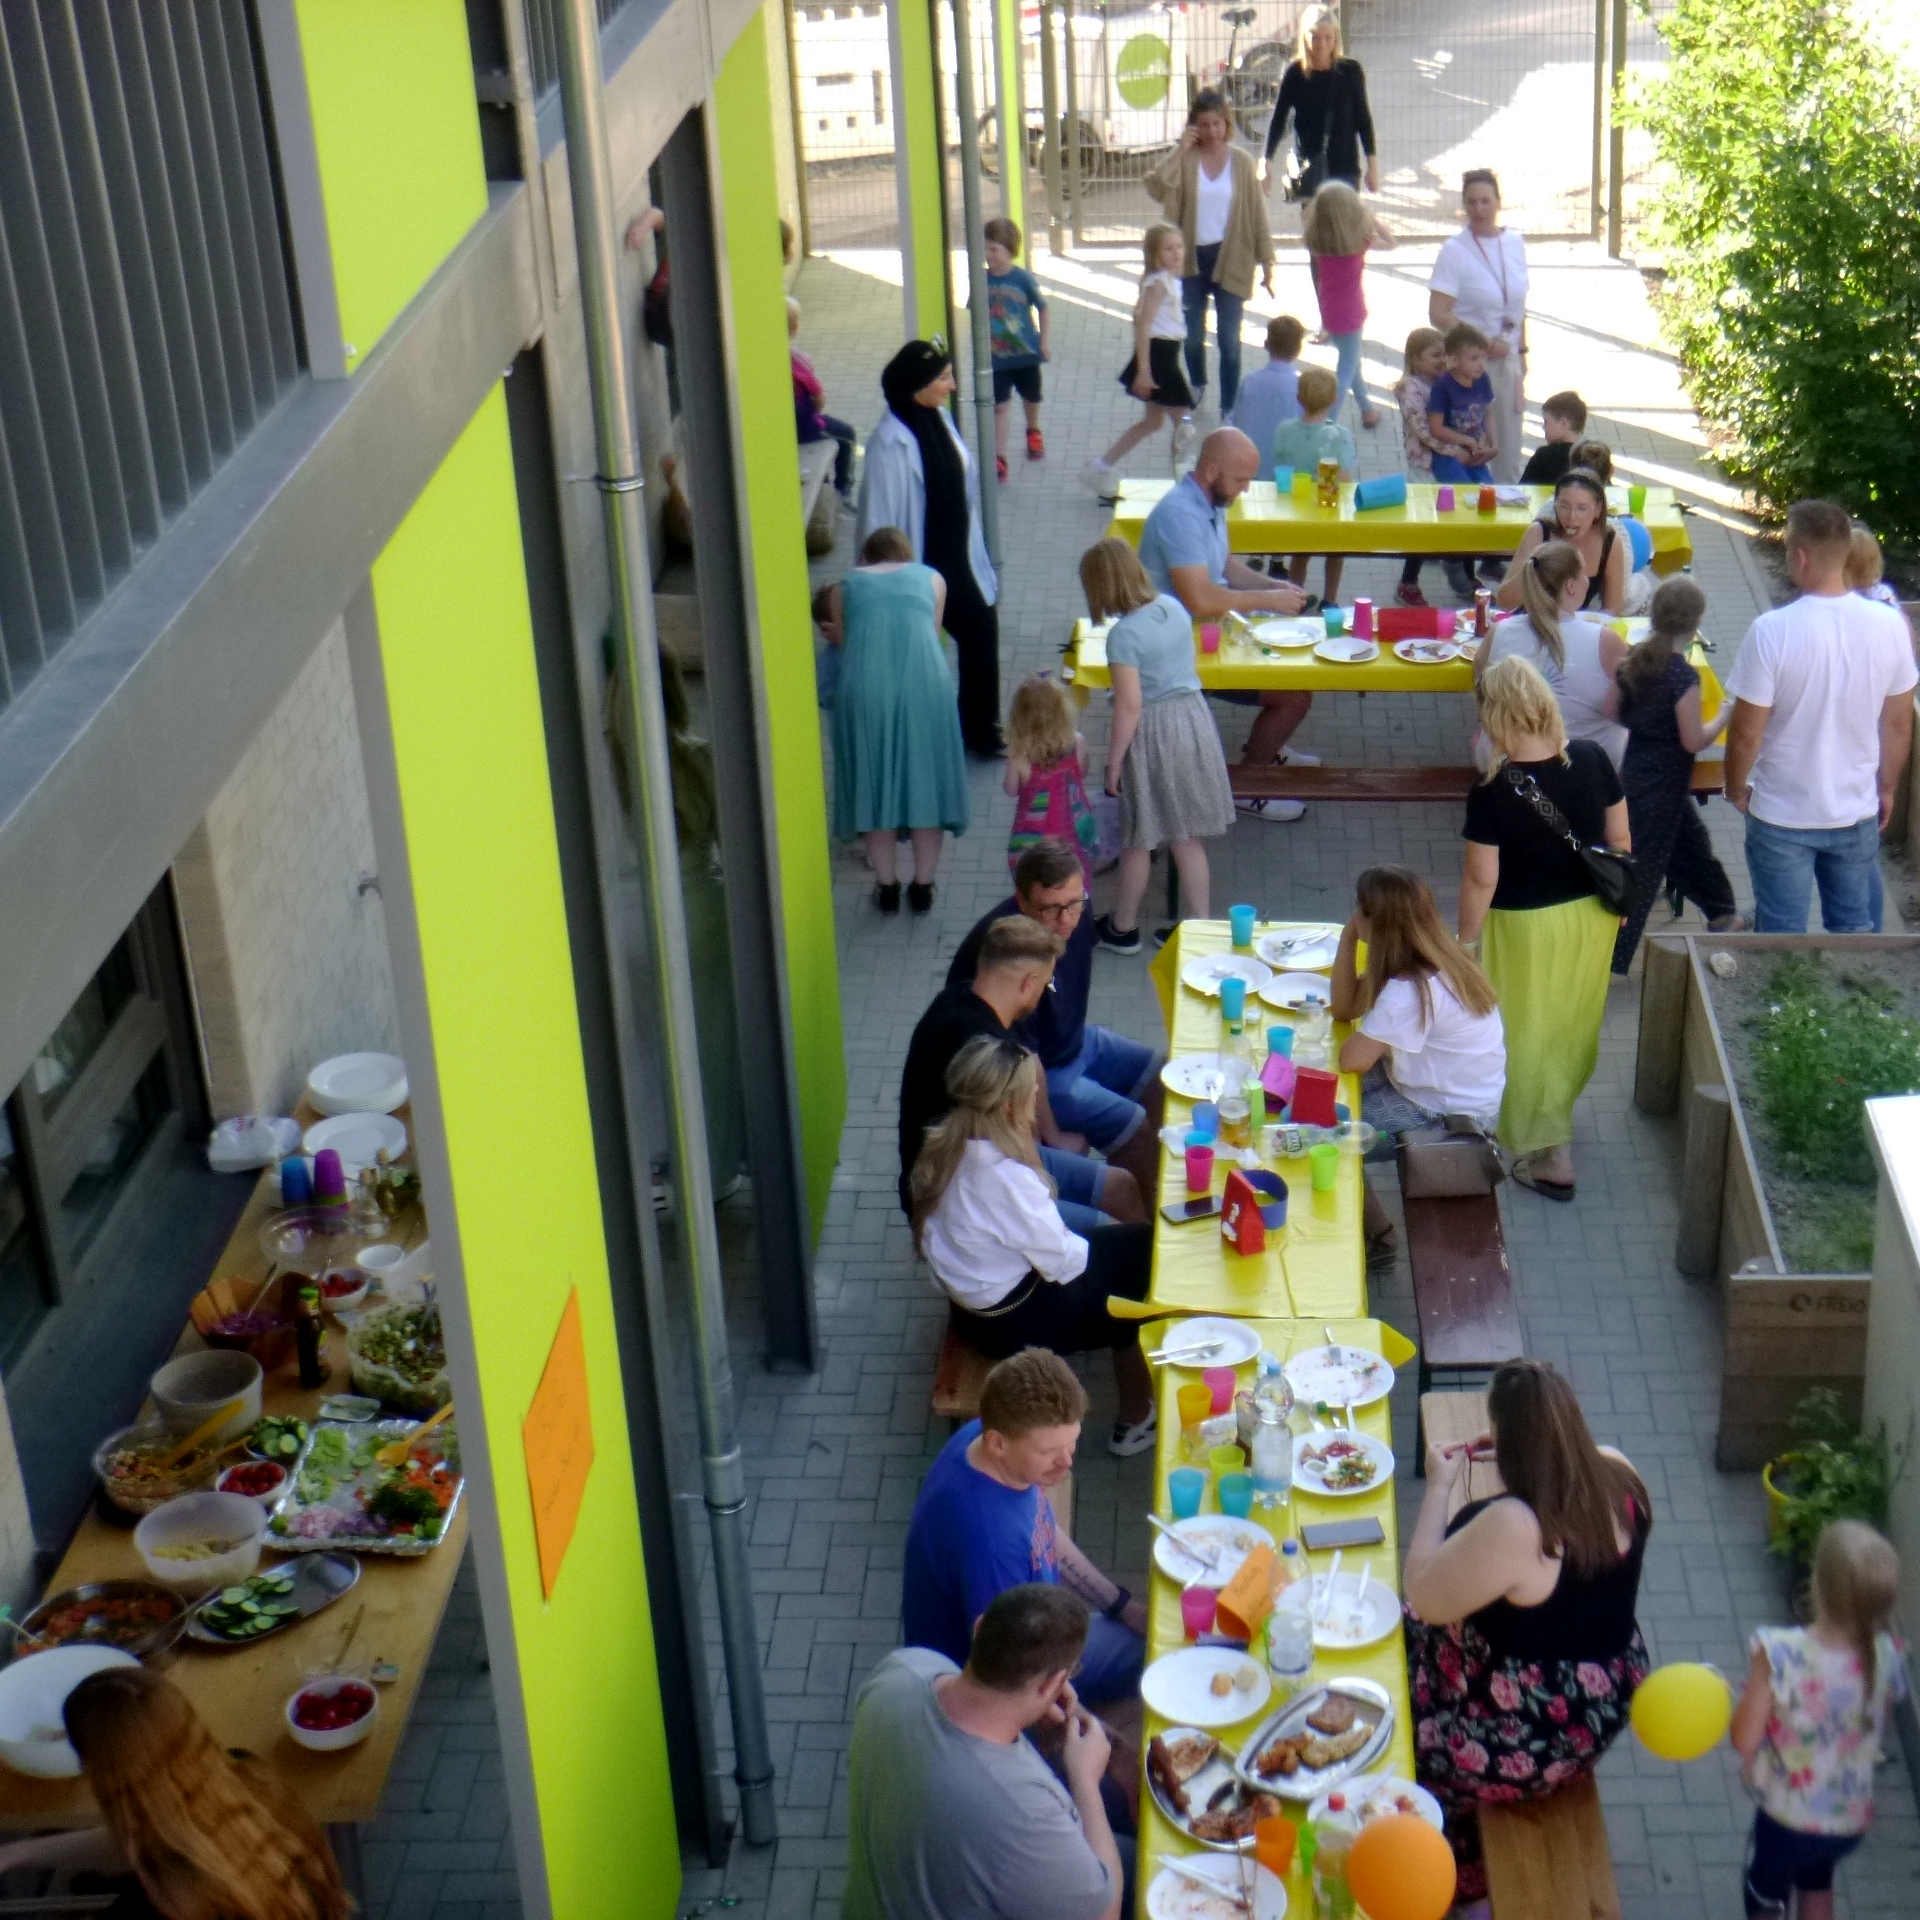 Das Foto zeigt eine Party. Menschen unterschiedlichen Alters sitzen an Tischen. Die Tische sind mit bunten Dekorationen und Essen gedeckt. Die Szenerie wirkt sonnig und spielt sich vor einem Gebäude mit grünen und gelben Wänden ab. 